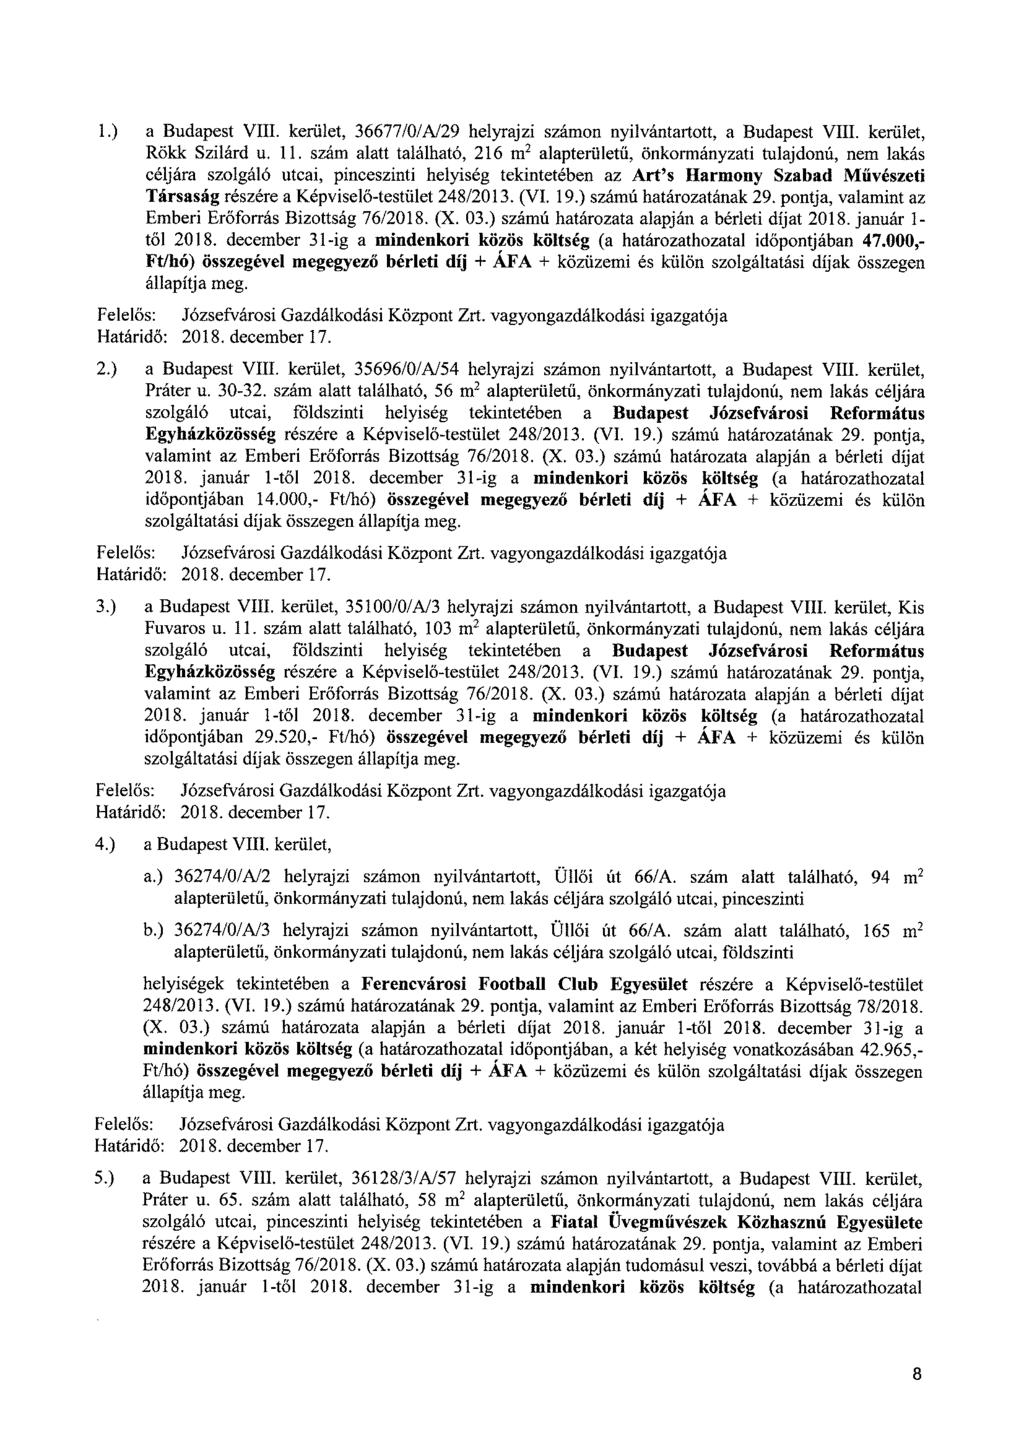 1.) a Budapest VIII. kerület, 36677/0/A/29 helyrajzi számon nyilvántartott, a Budapest VIII. kerület, Röklc Szilárd u. 11.